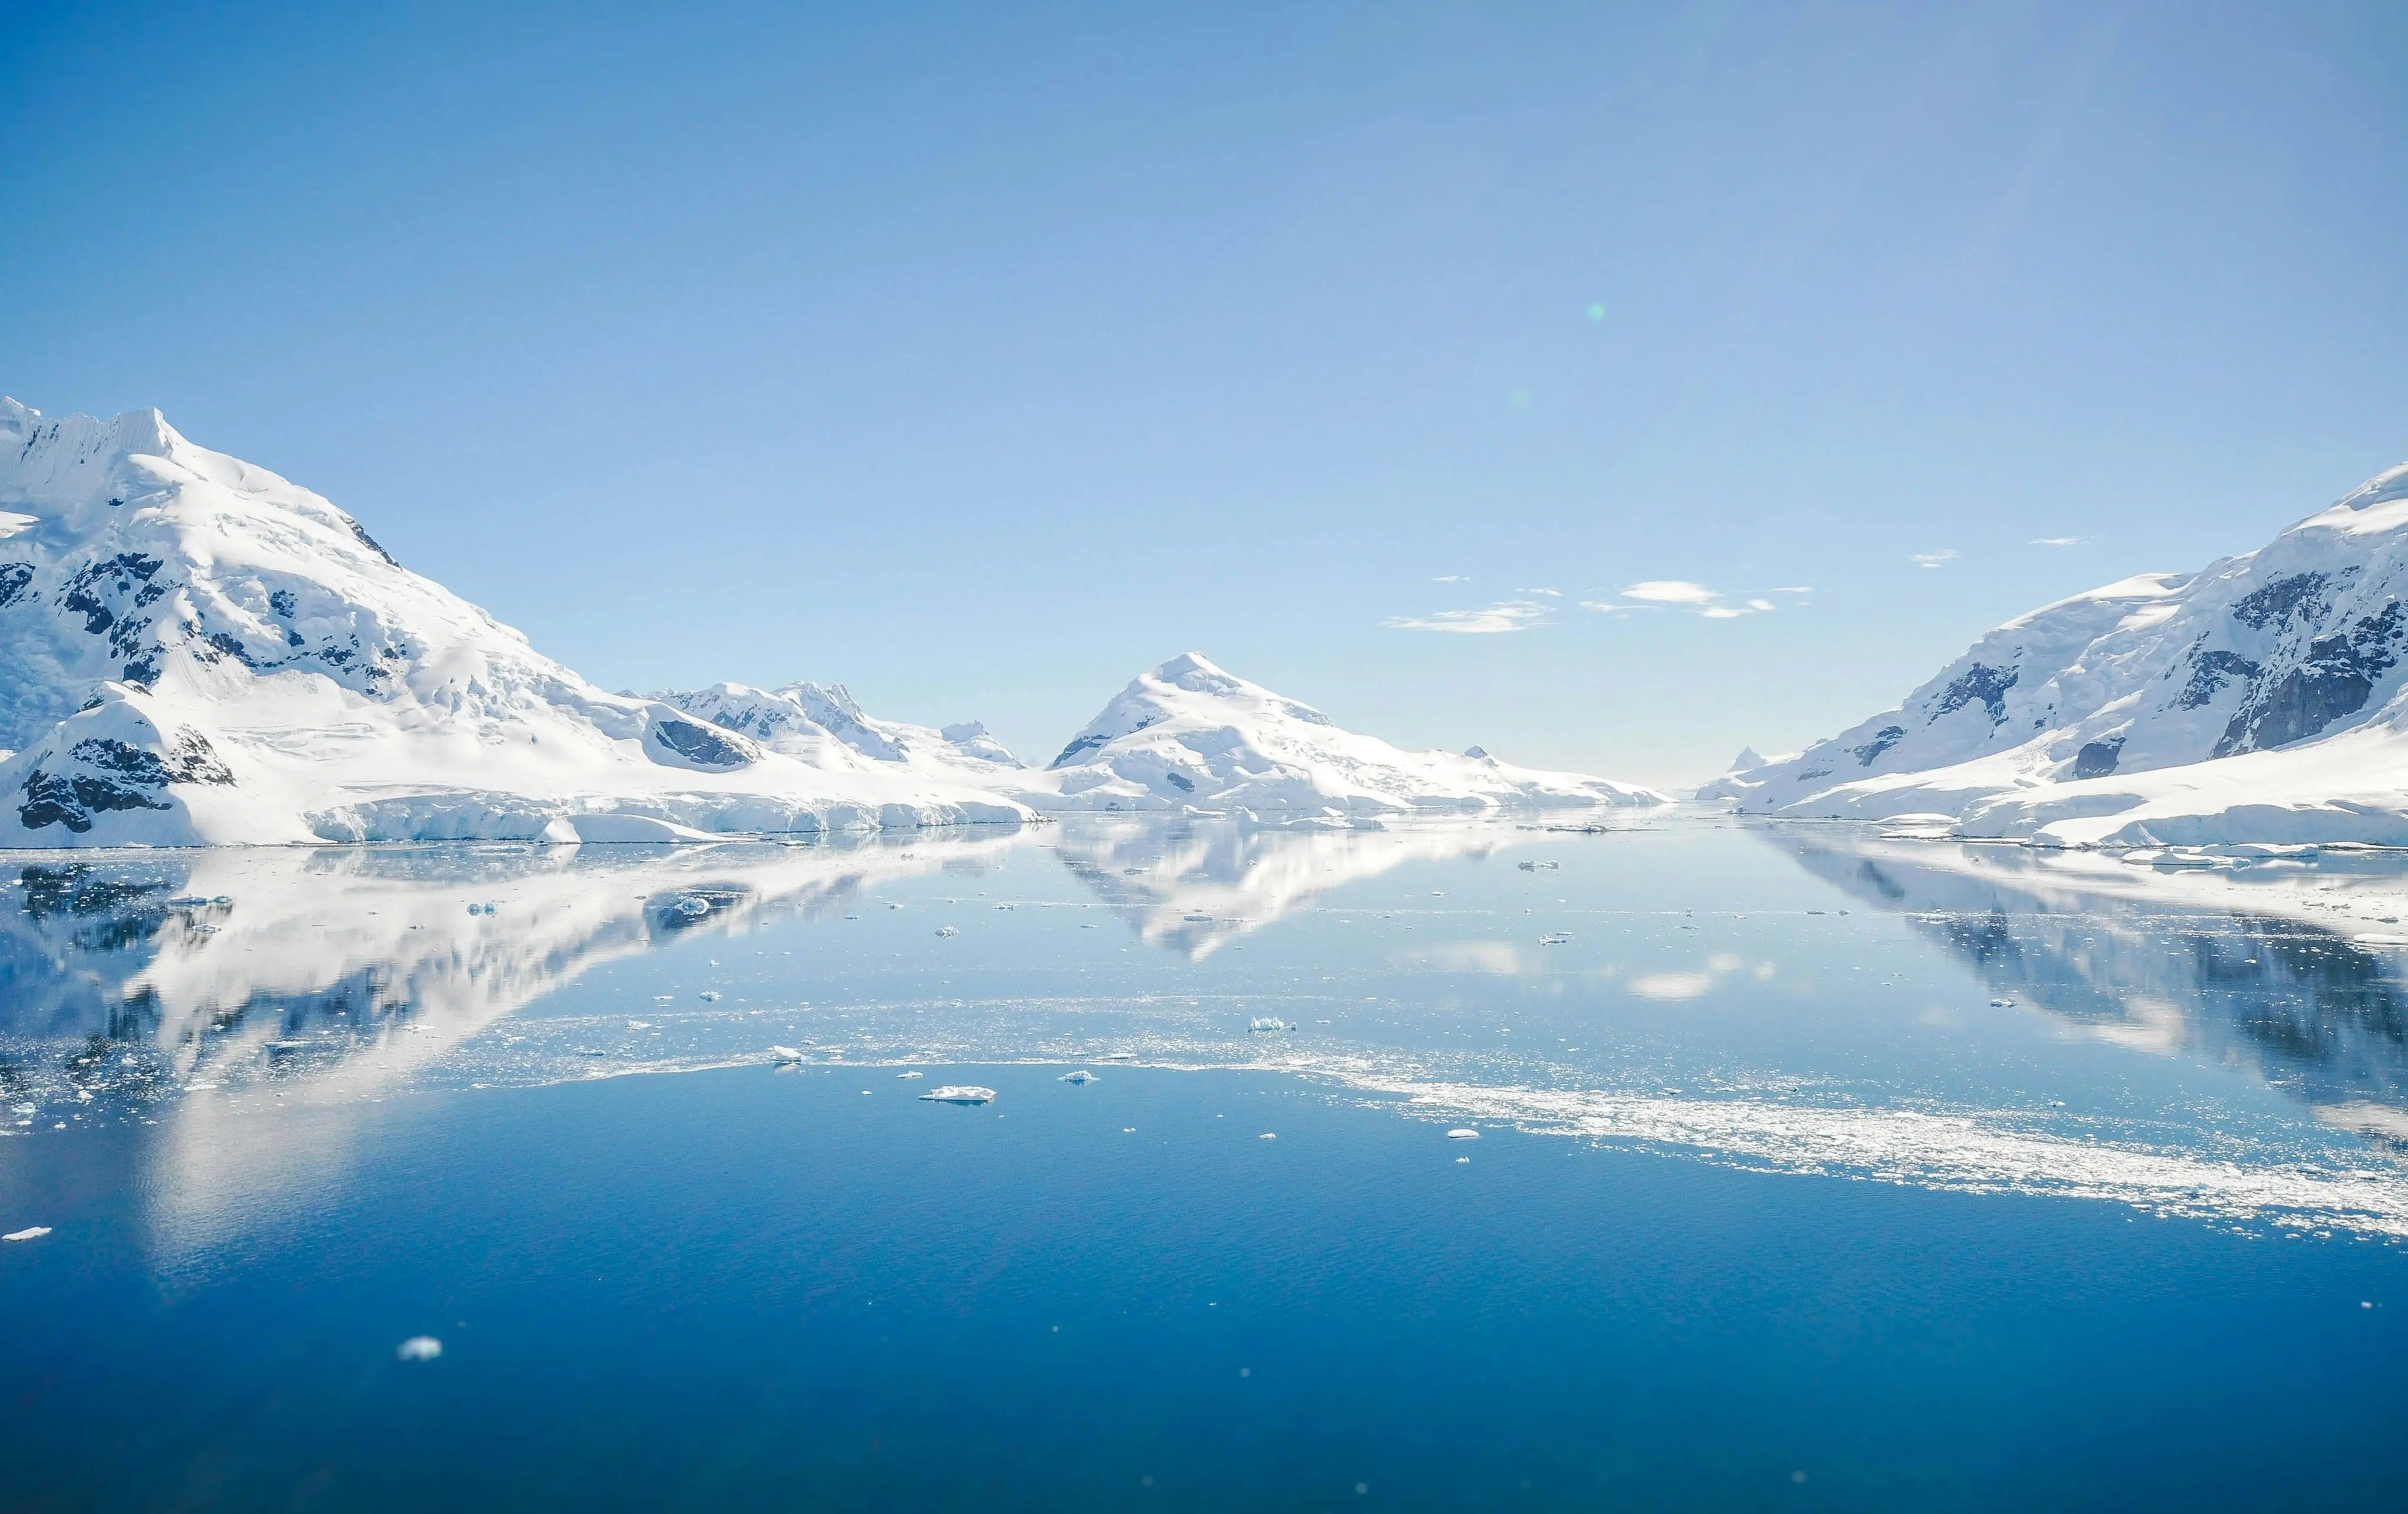 Країна льоду, пінгвінів і загадок: чи мають українці можливість вільно відвідати Антарктиду?